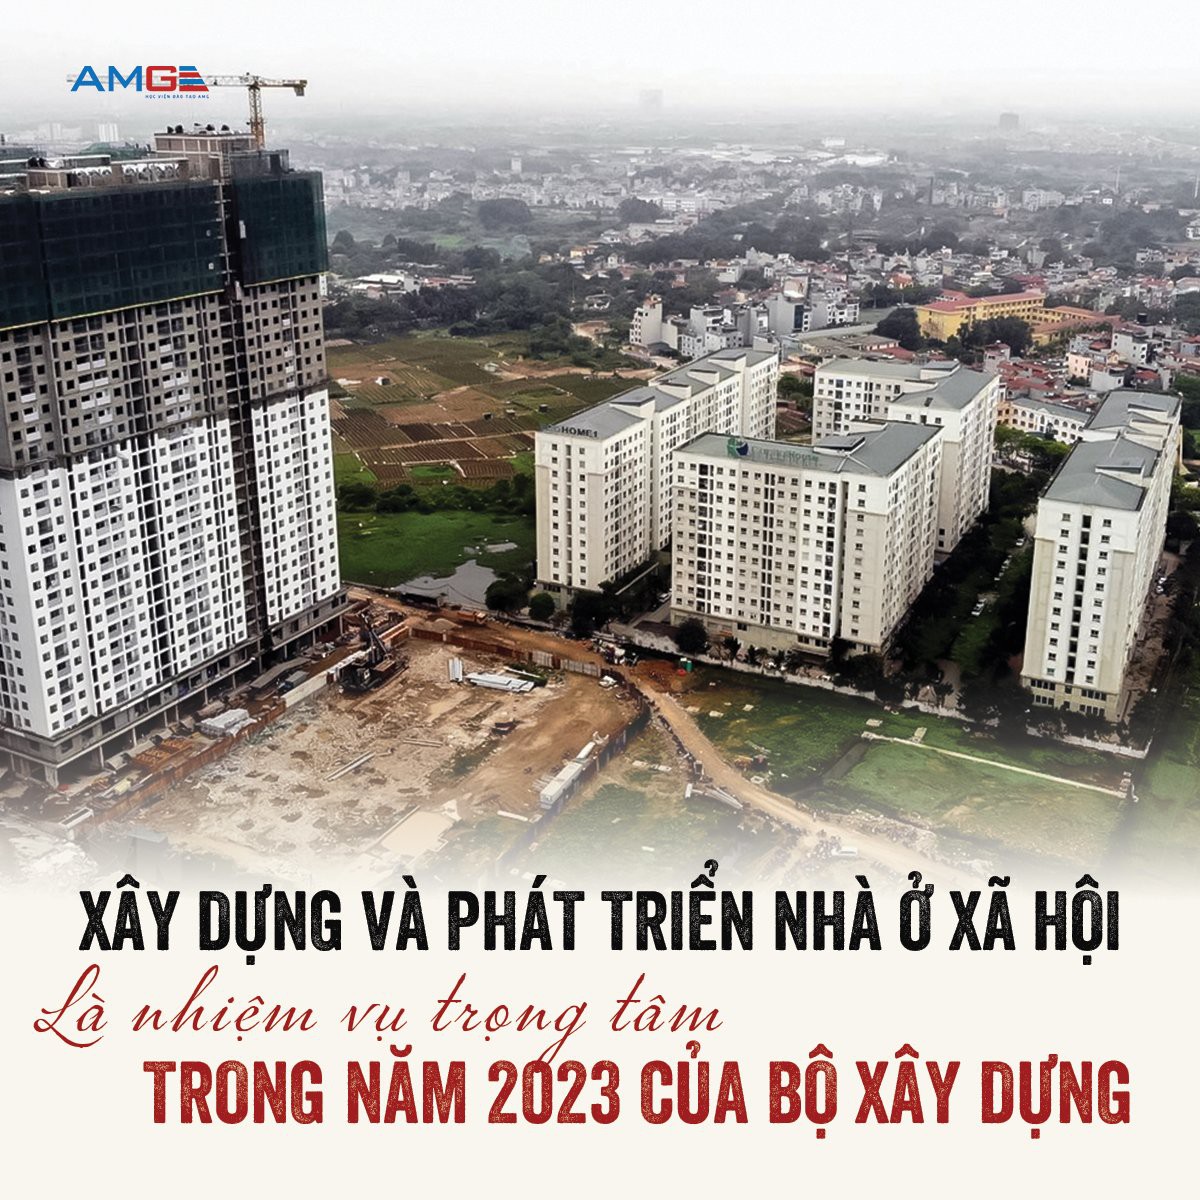 Xây dựng và phát triển nhà ở xã hội là nhiệm vụ trọng tâm năm 2023 của Bộ Xây dựng